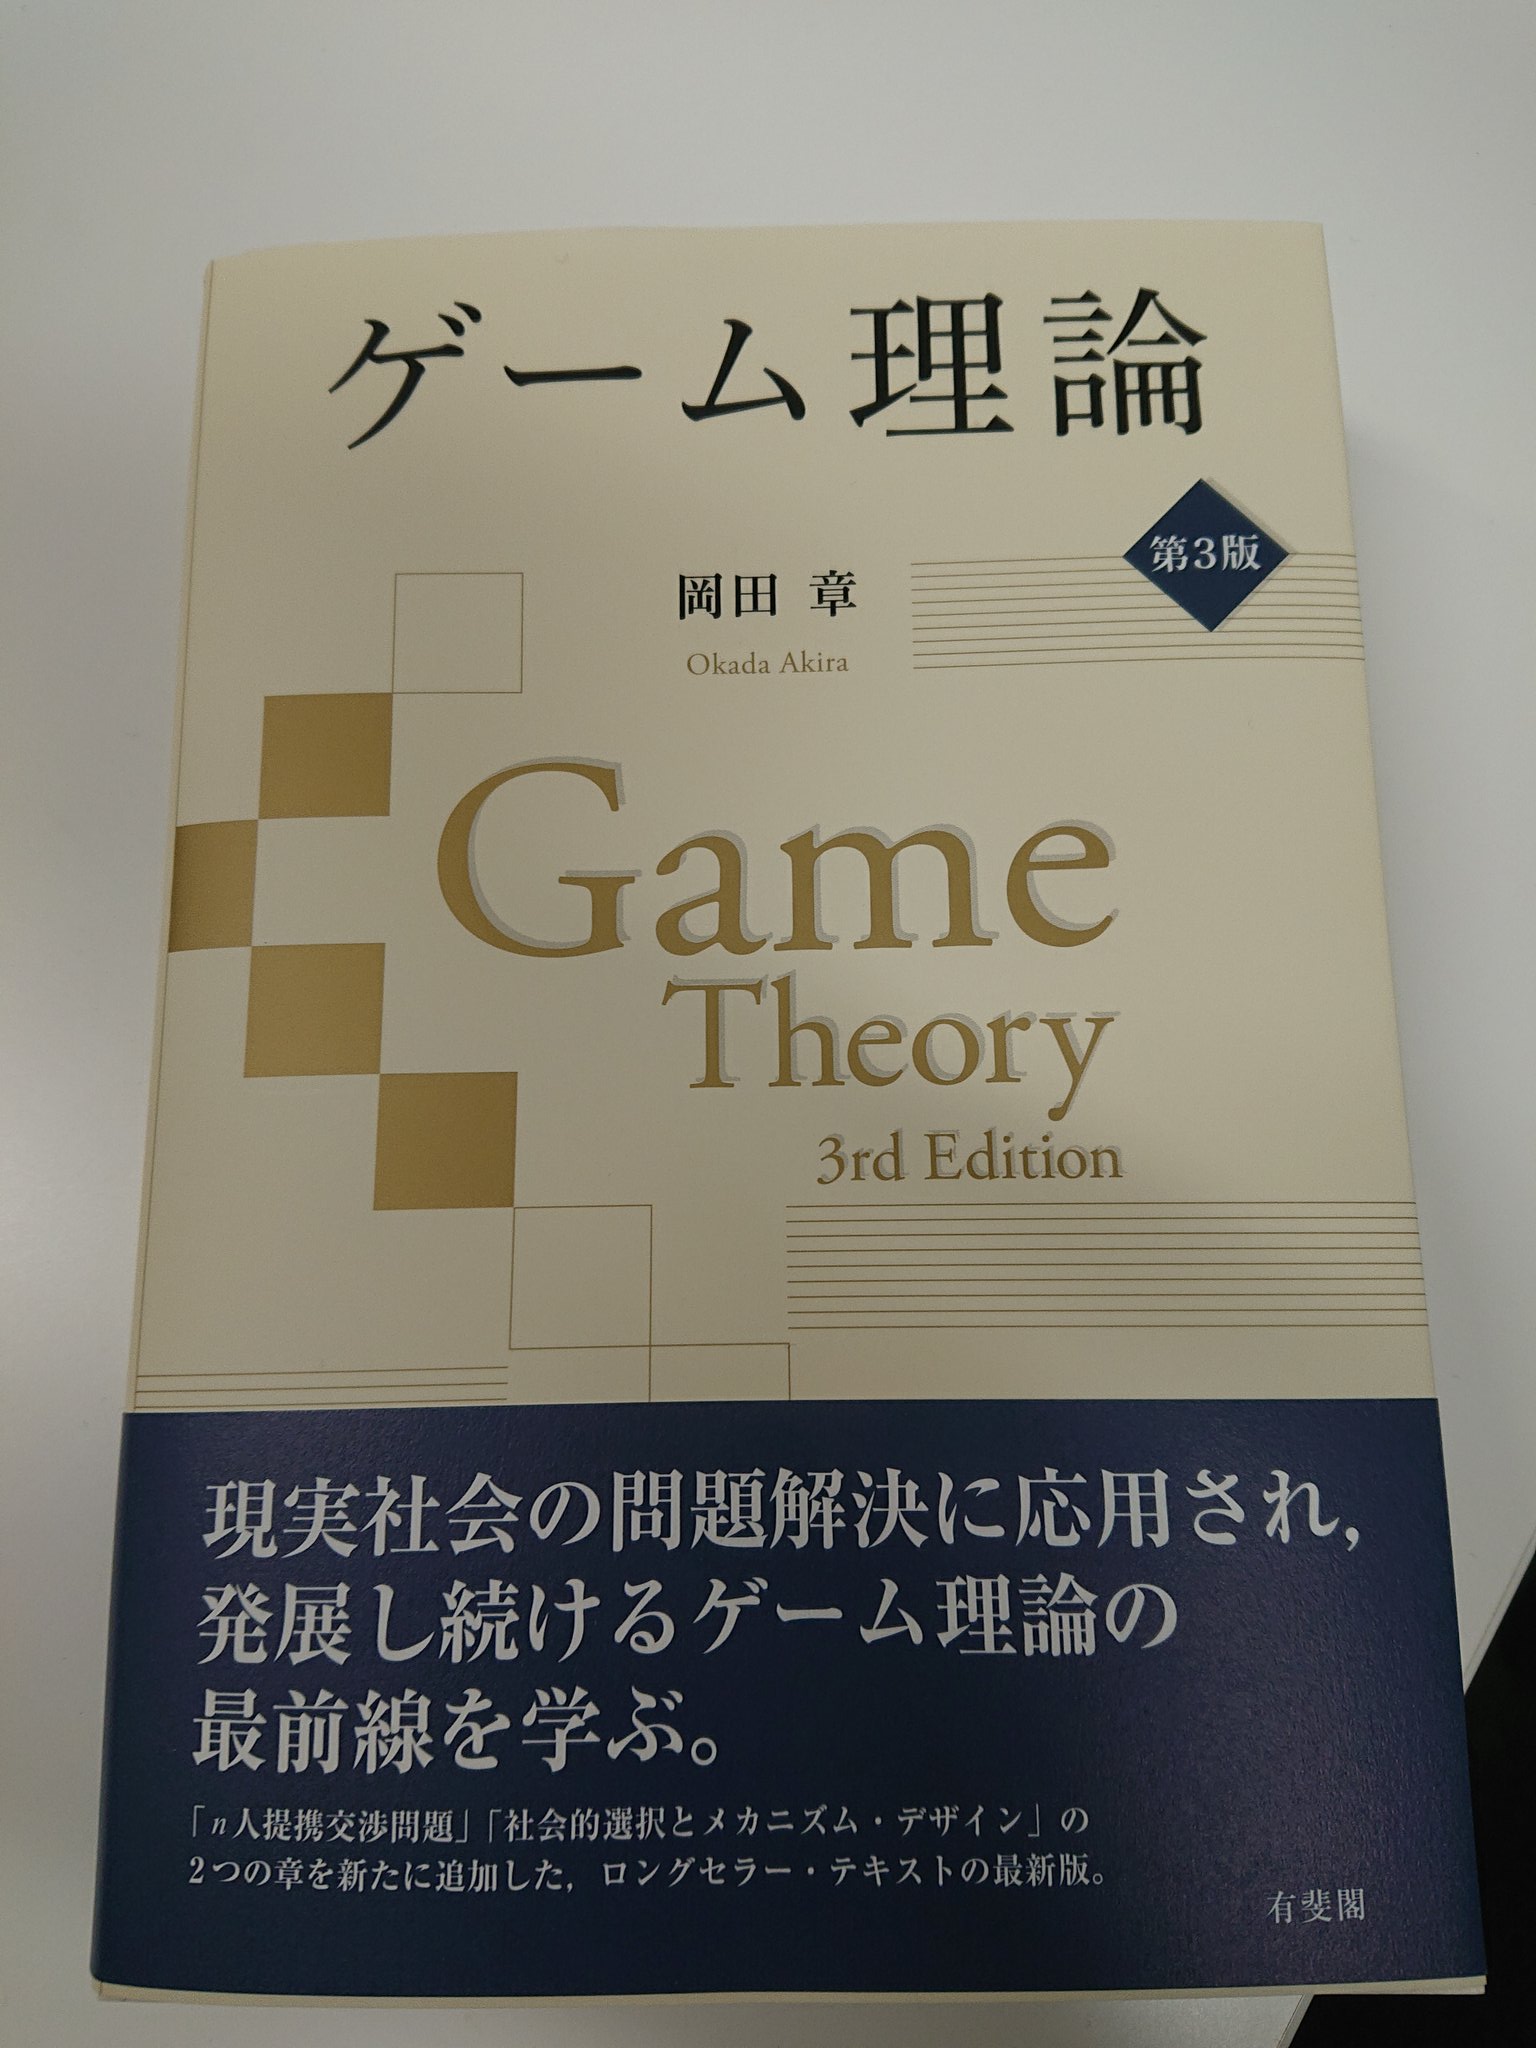 Y Asako 岡田章先生の ゲーム理論 第３版 ご恵投いただきました ありがとうございました N人 提携交渉問題 と 社会選択とメカニズム デザイン の二章が加わっています 私は この本の初版でゲーム理論を学びました さらには参考文献に拙著を